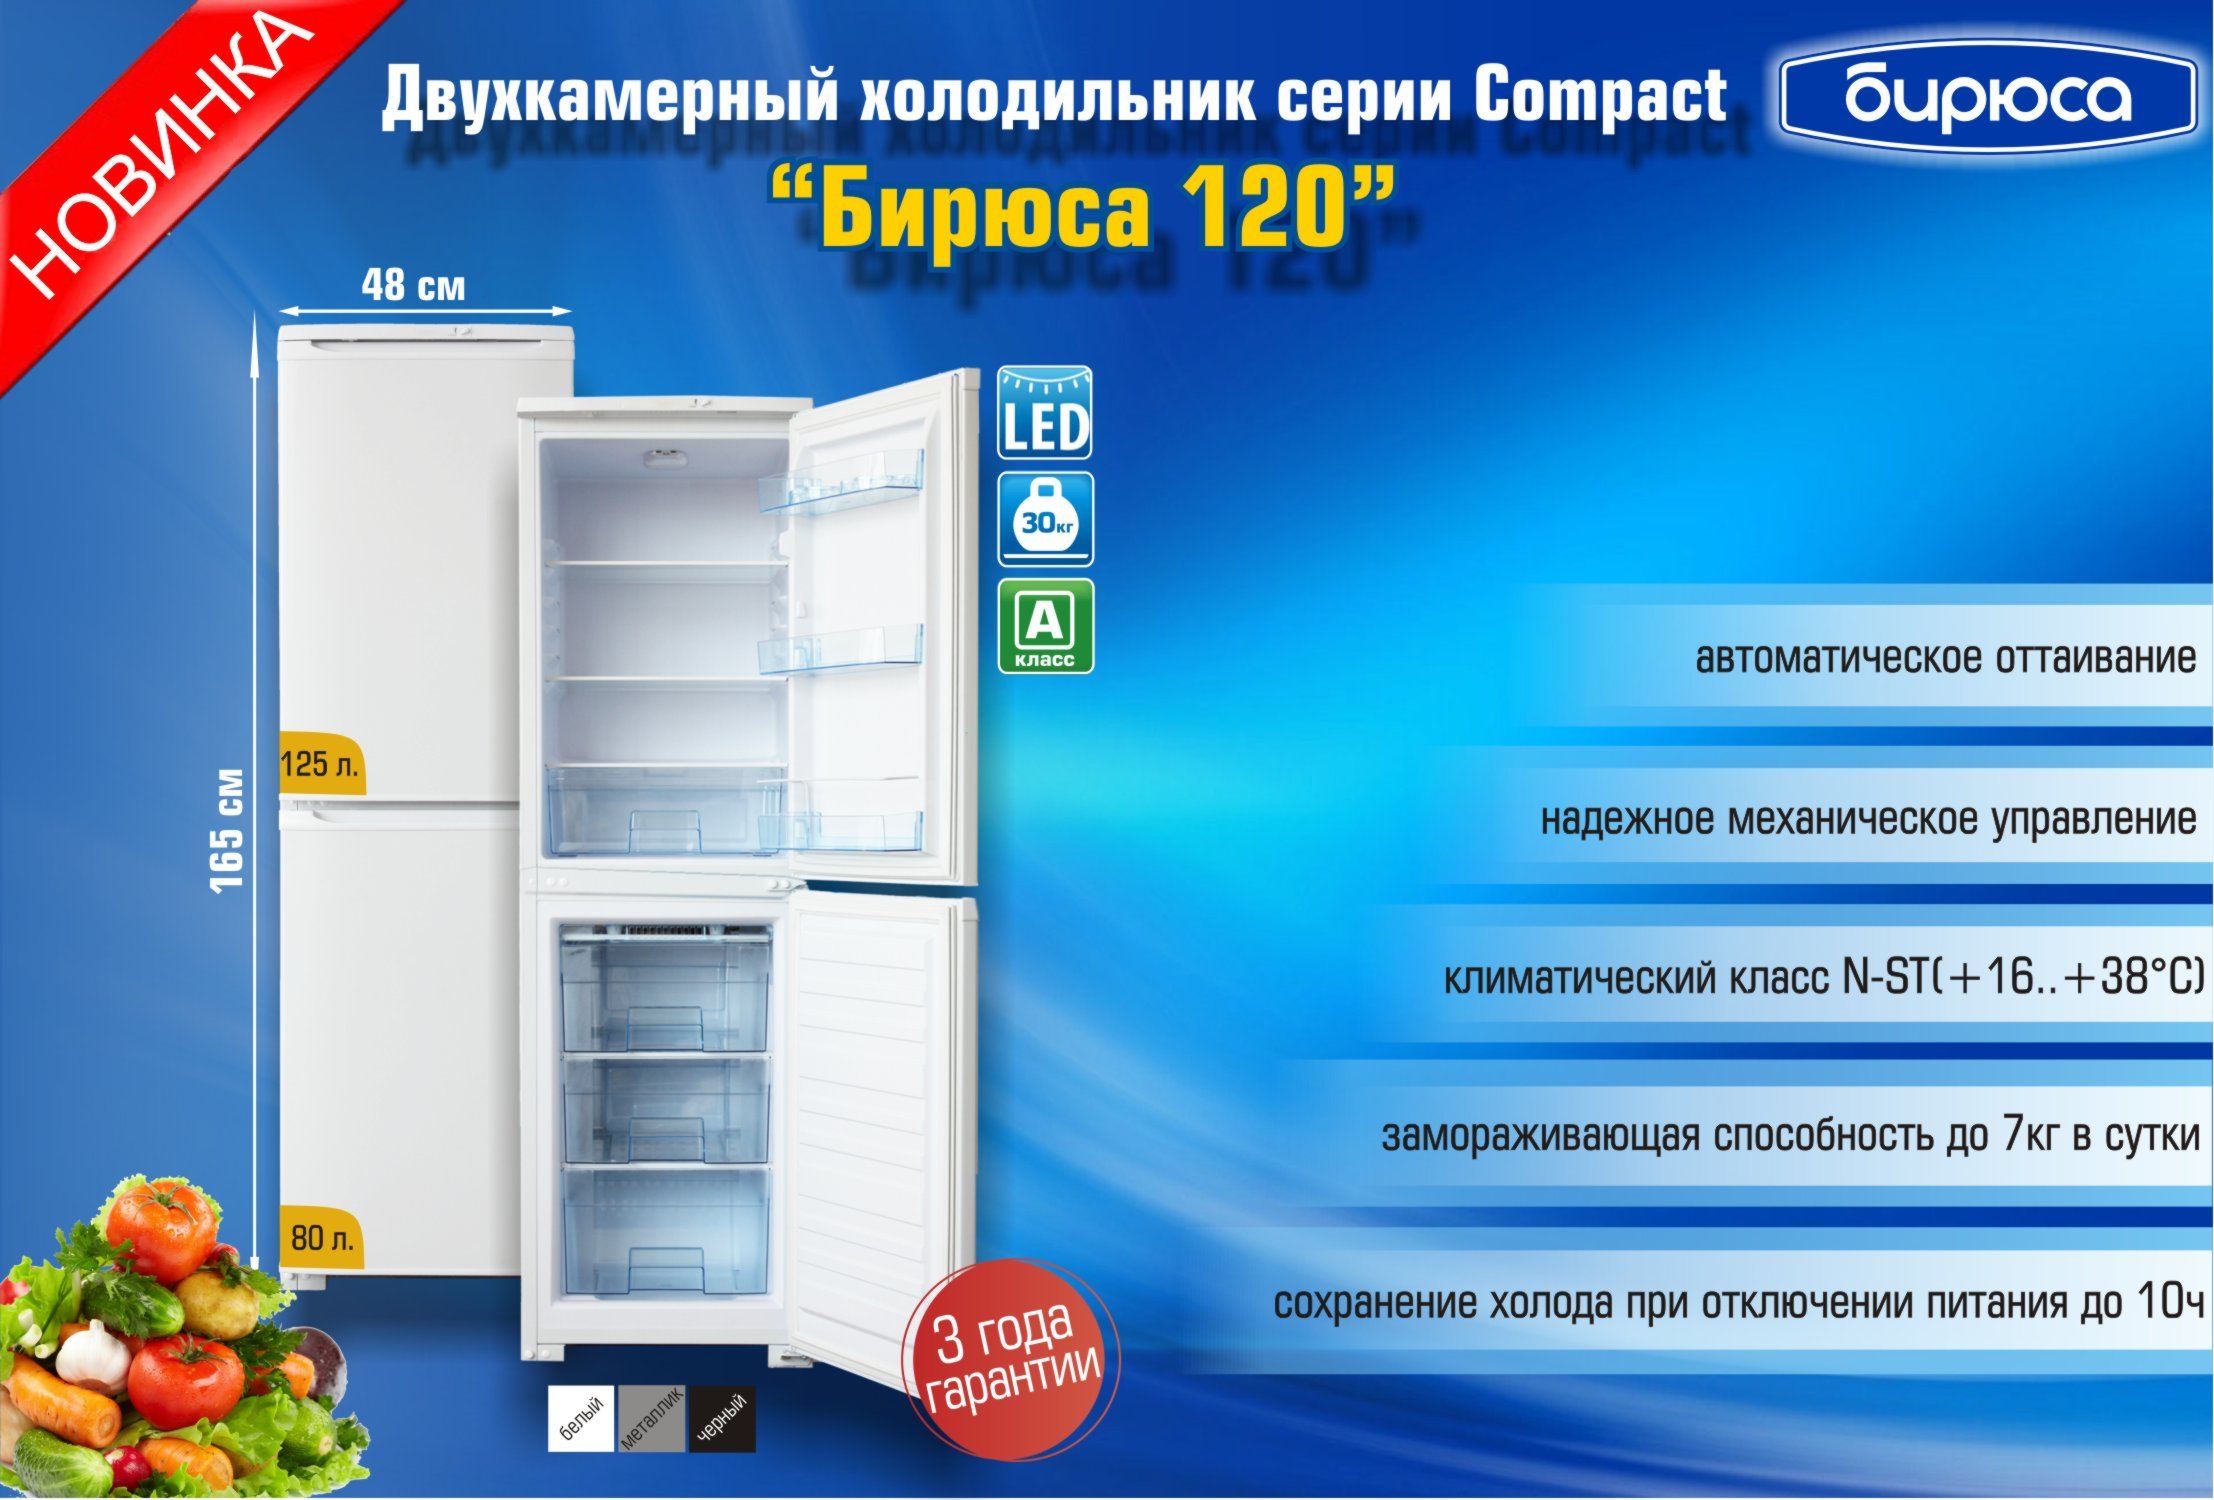 Выбираем и сравниваем холодильник индезит и атлант: главные отличия и особенности, плюсы и минусы моделей, советы покупателям